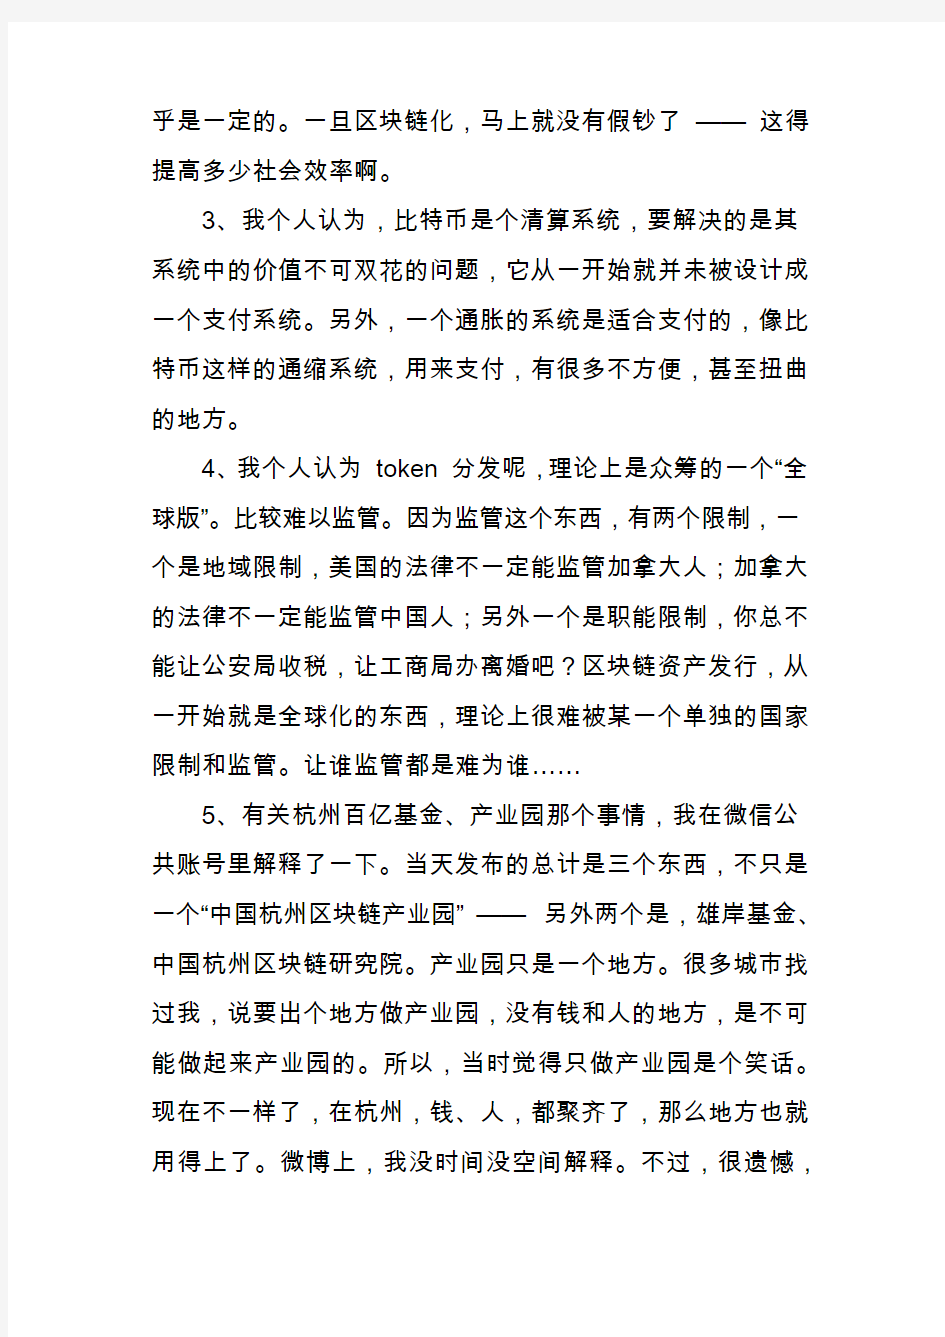 李笑来做客腾讯新闻：中国是未来区块链最大的市场